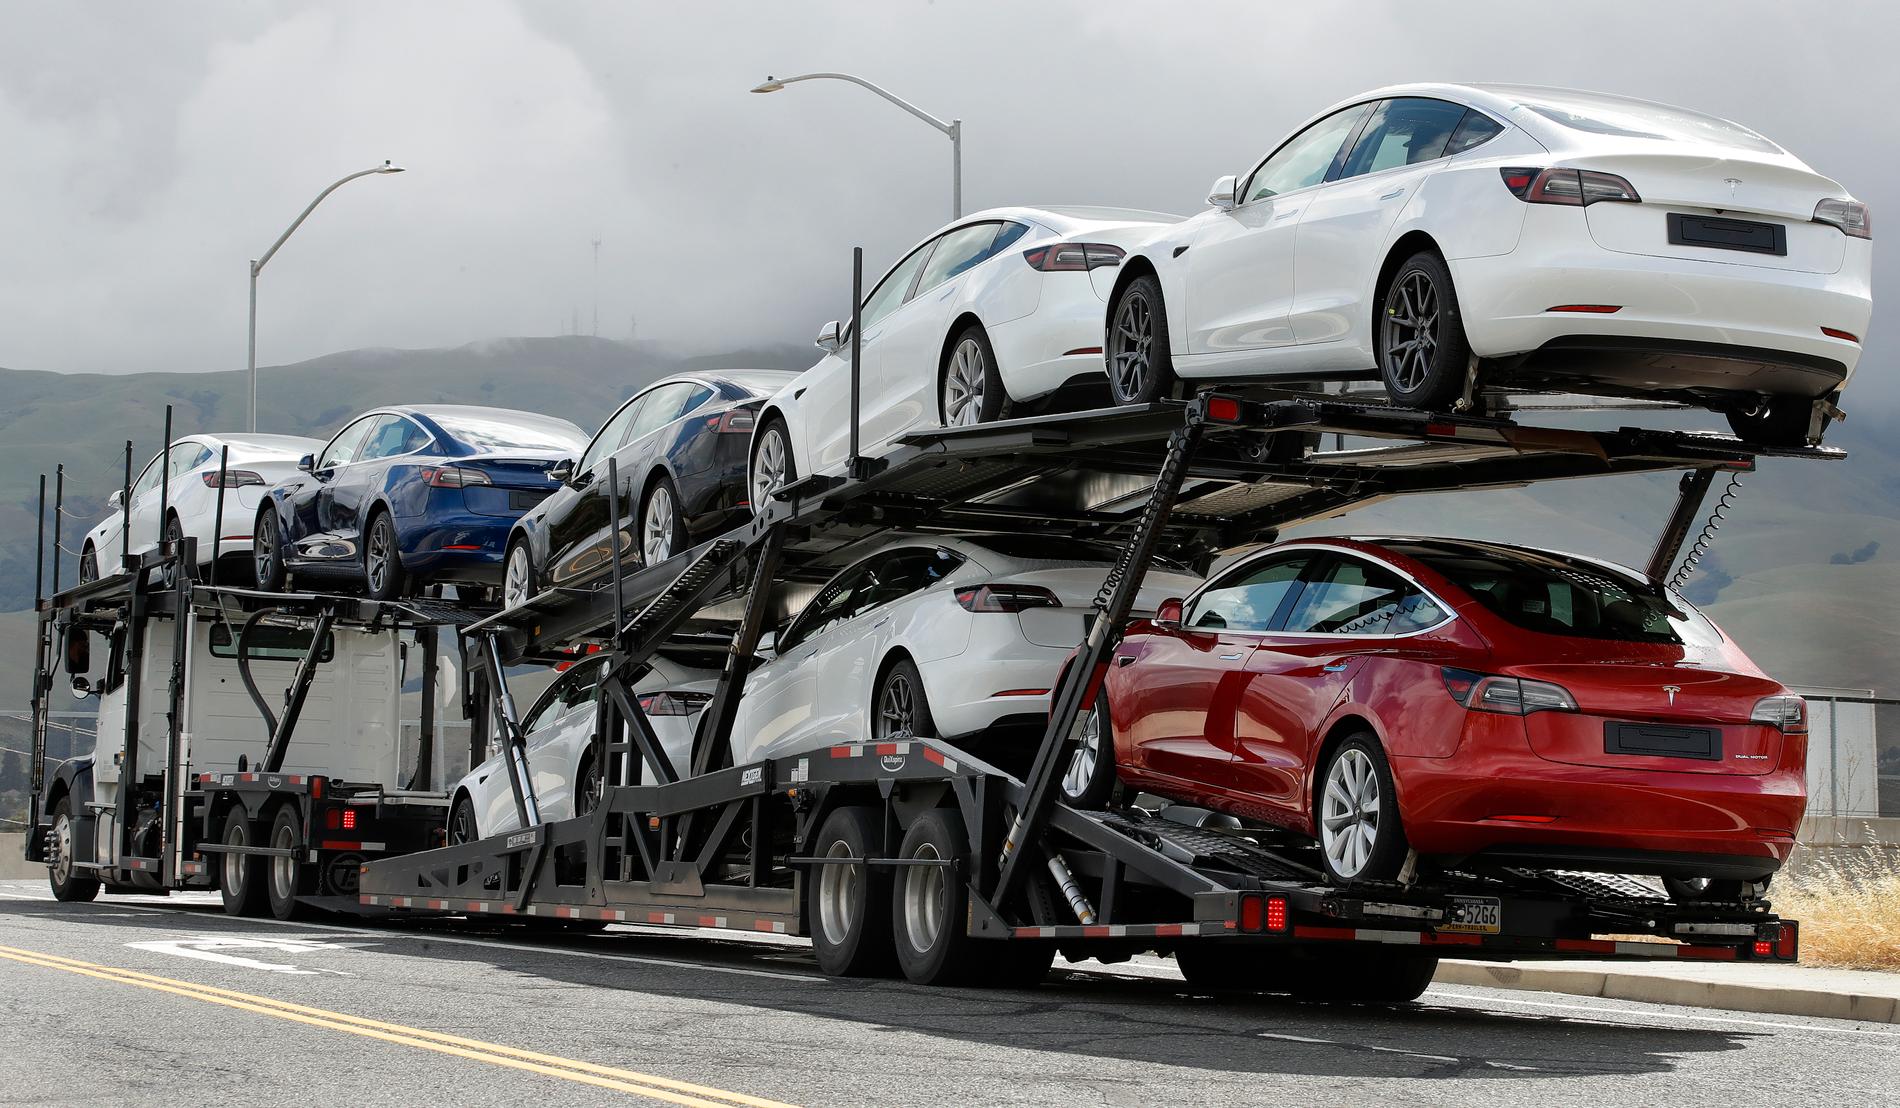 Nya Teslabilar rullar i väg från elbilstillverkarens fabrik i Kalifornien, USA. Arkivbild.